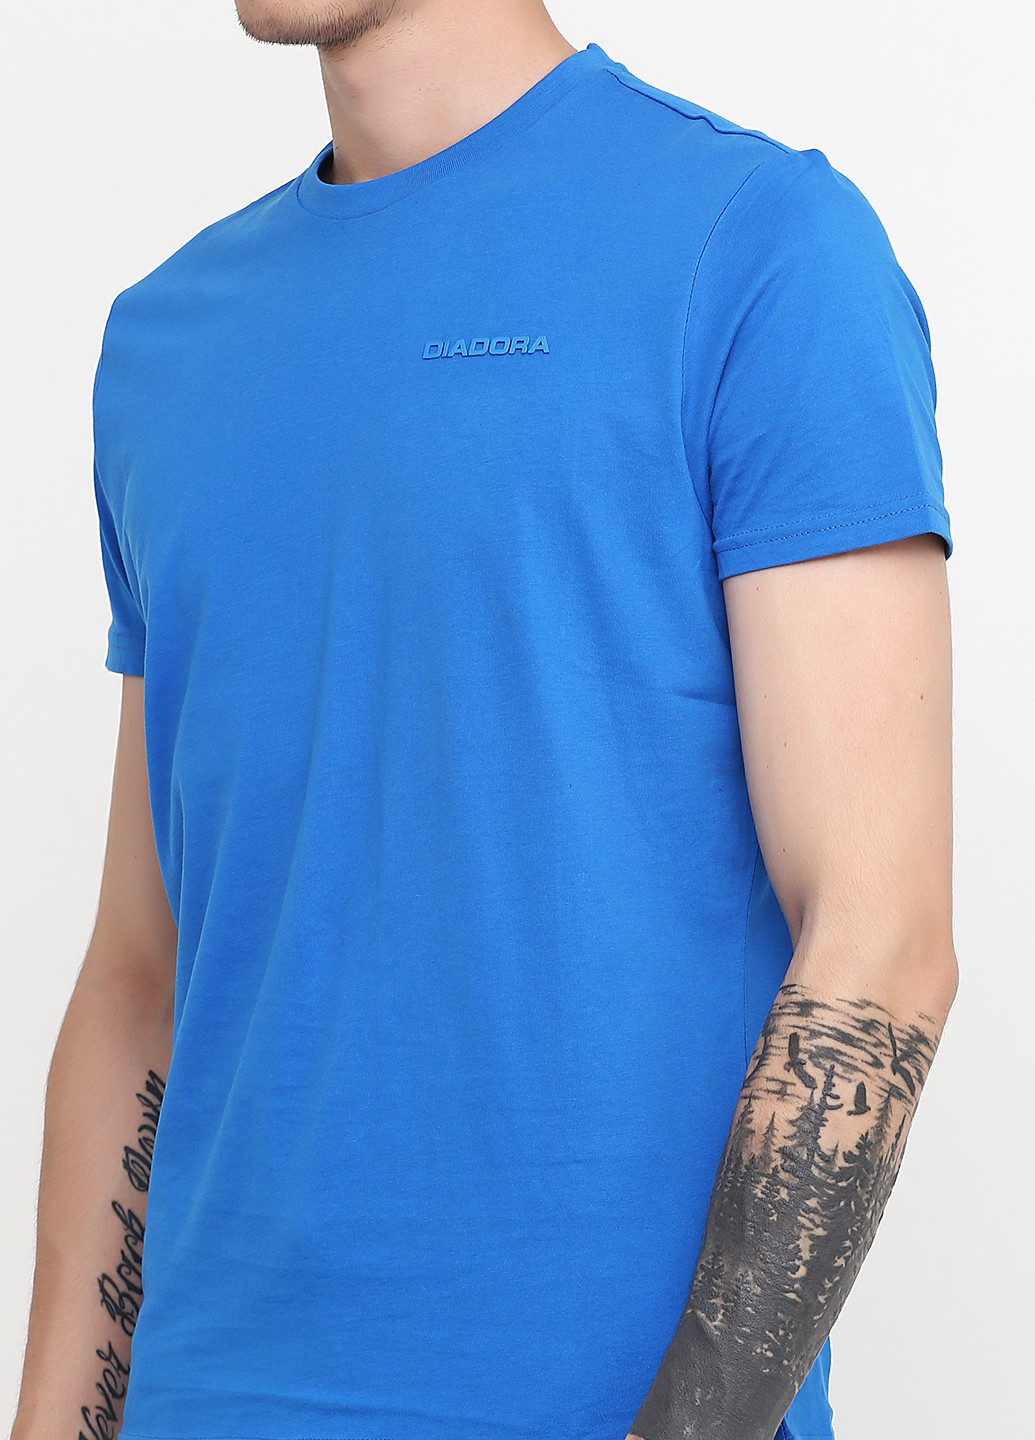 Синя футболка з коротким рукавом Diadora